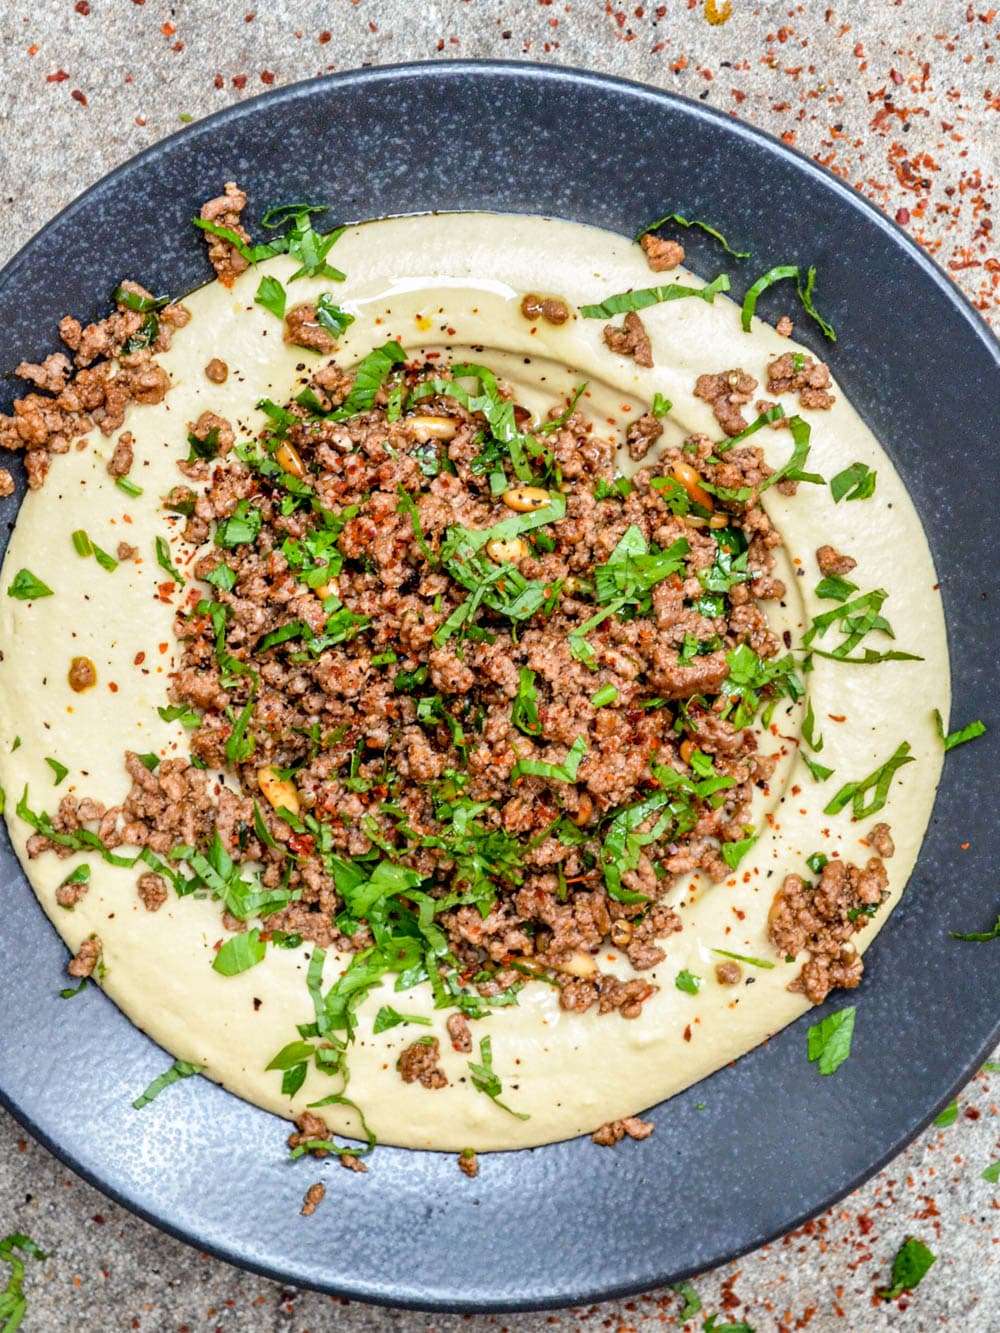 هوموس با گوشت گاو ادویه دار بهارات - دستور پخت / آشپزخانه ای در استانبول